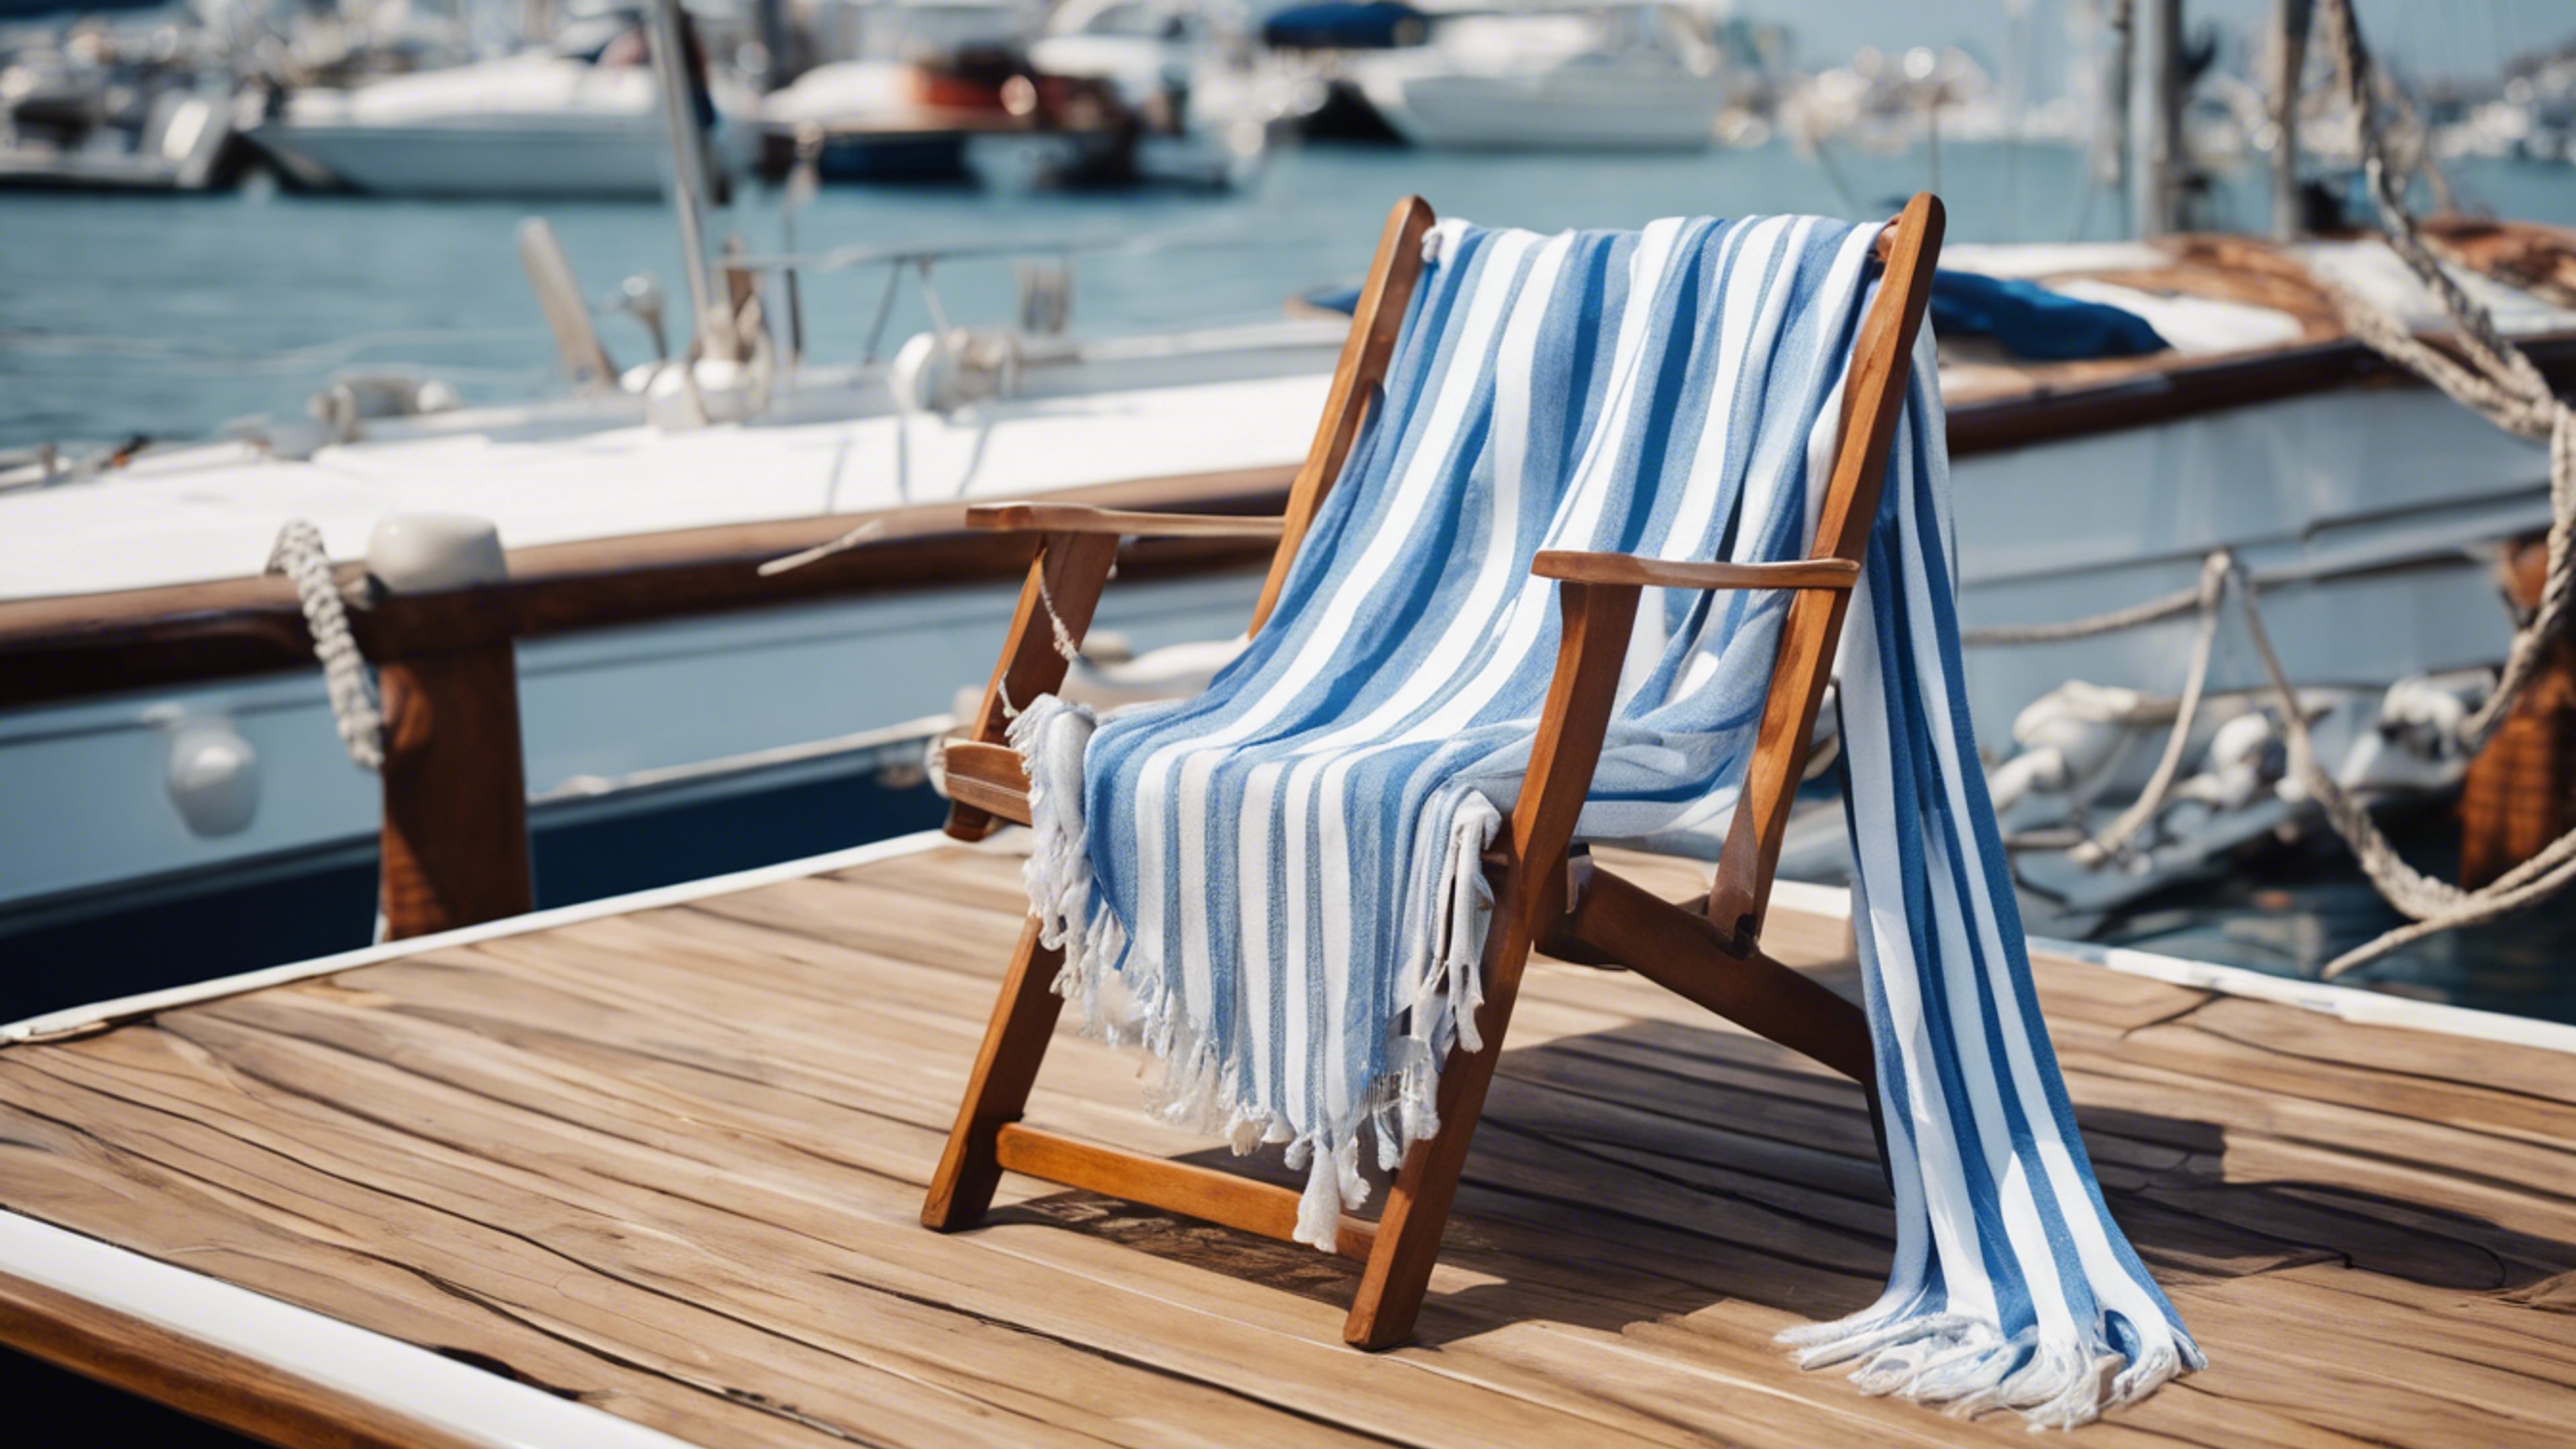 Preppy blue and white striped shawl draped over a teak deck chair on a sailboat.壁紙[8e59a438a9aa4e06a25d]